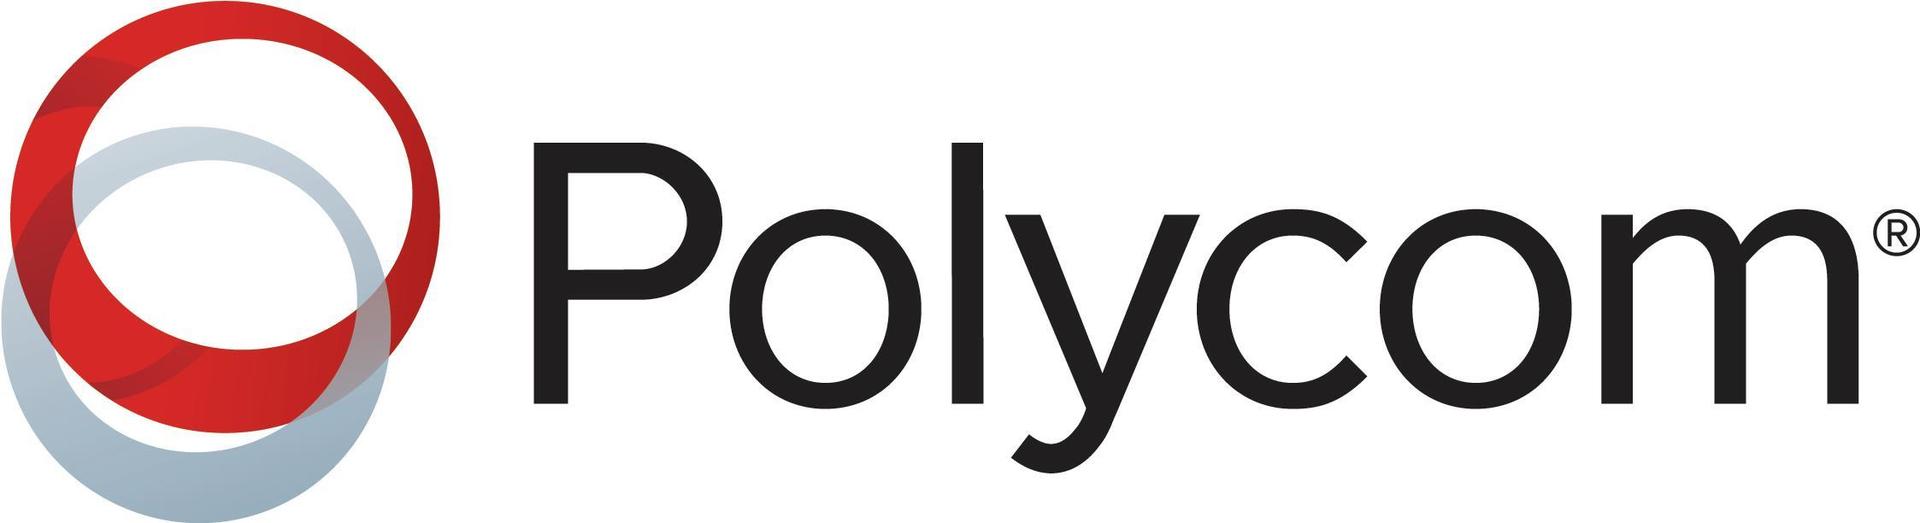 Polycom Premier - Serviceerweiterung - Erweiterter Teileaustausch - 3 Jahre - Lieferung (4870-63880-312)